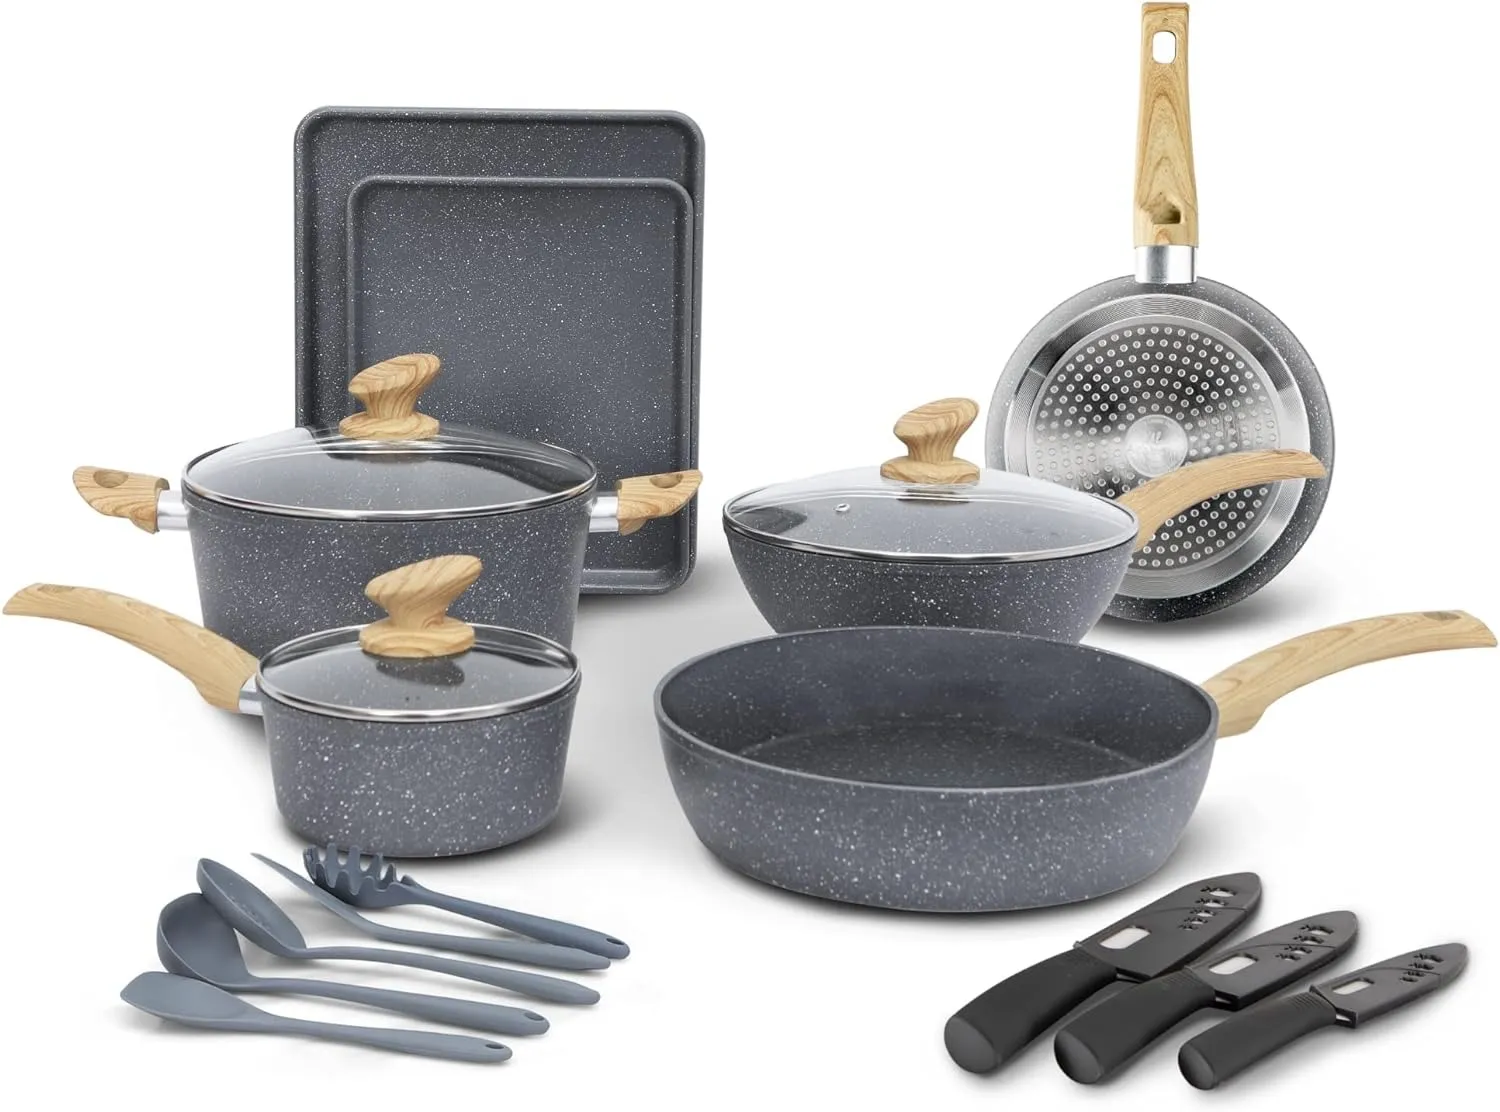 Maison Arts 18 قطعة وأقالي مجموعة - مجموعات أدوات طبخ المطبخ مع طلاء الحجر من الجرانيت غير لاصق ، مناسبة لأوبوف الحث ، رمادي